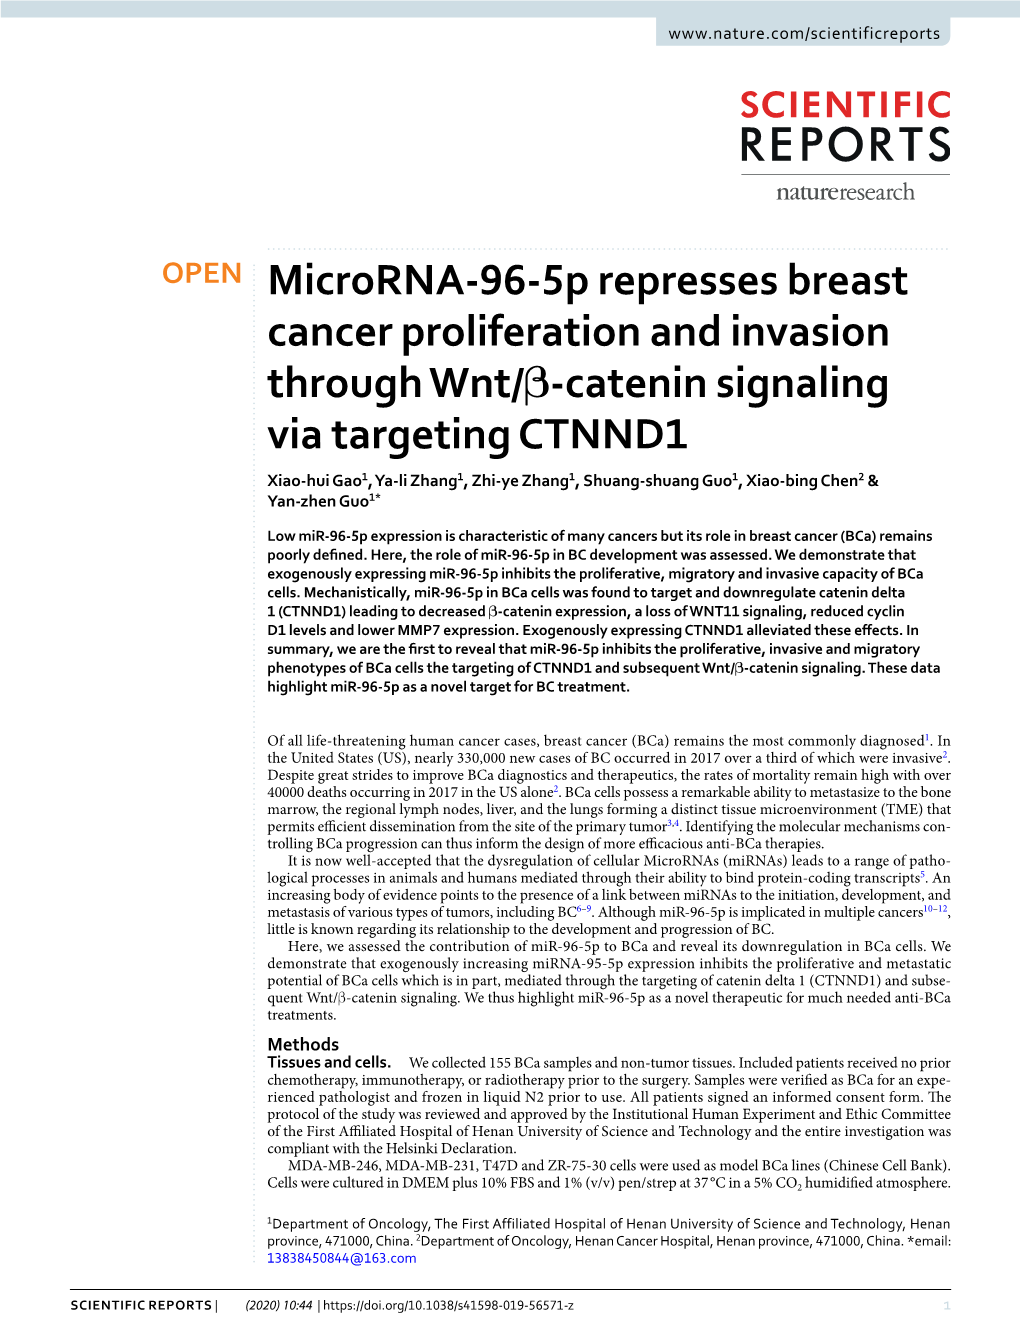 Microrna-96-5P Represses Breast Cancer Proliferation and Invasion